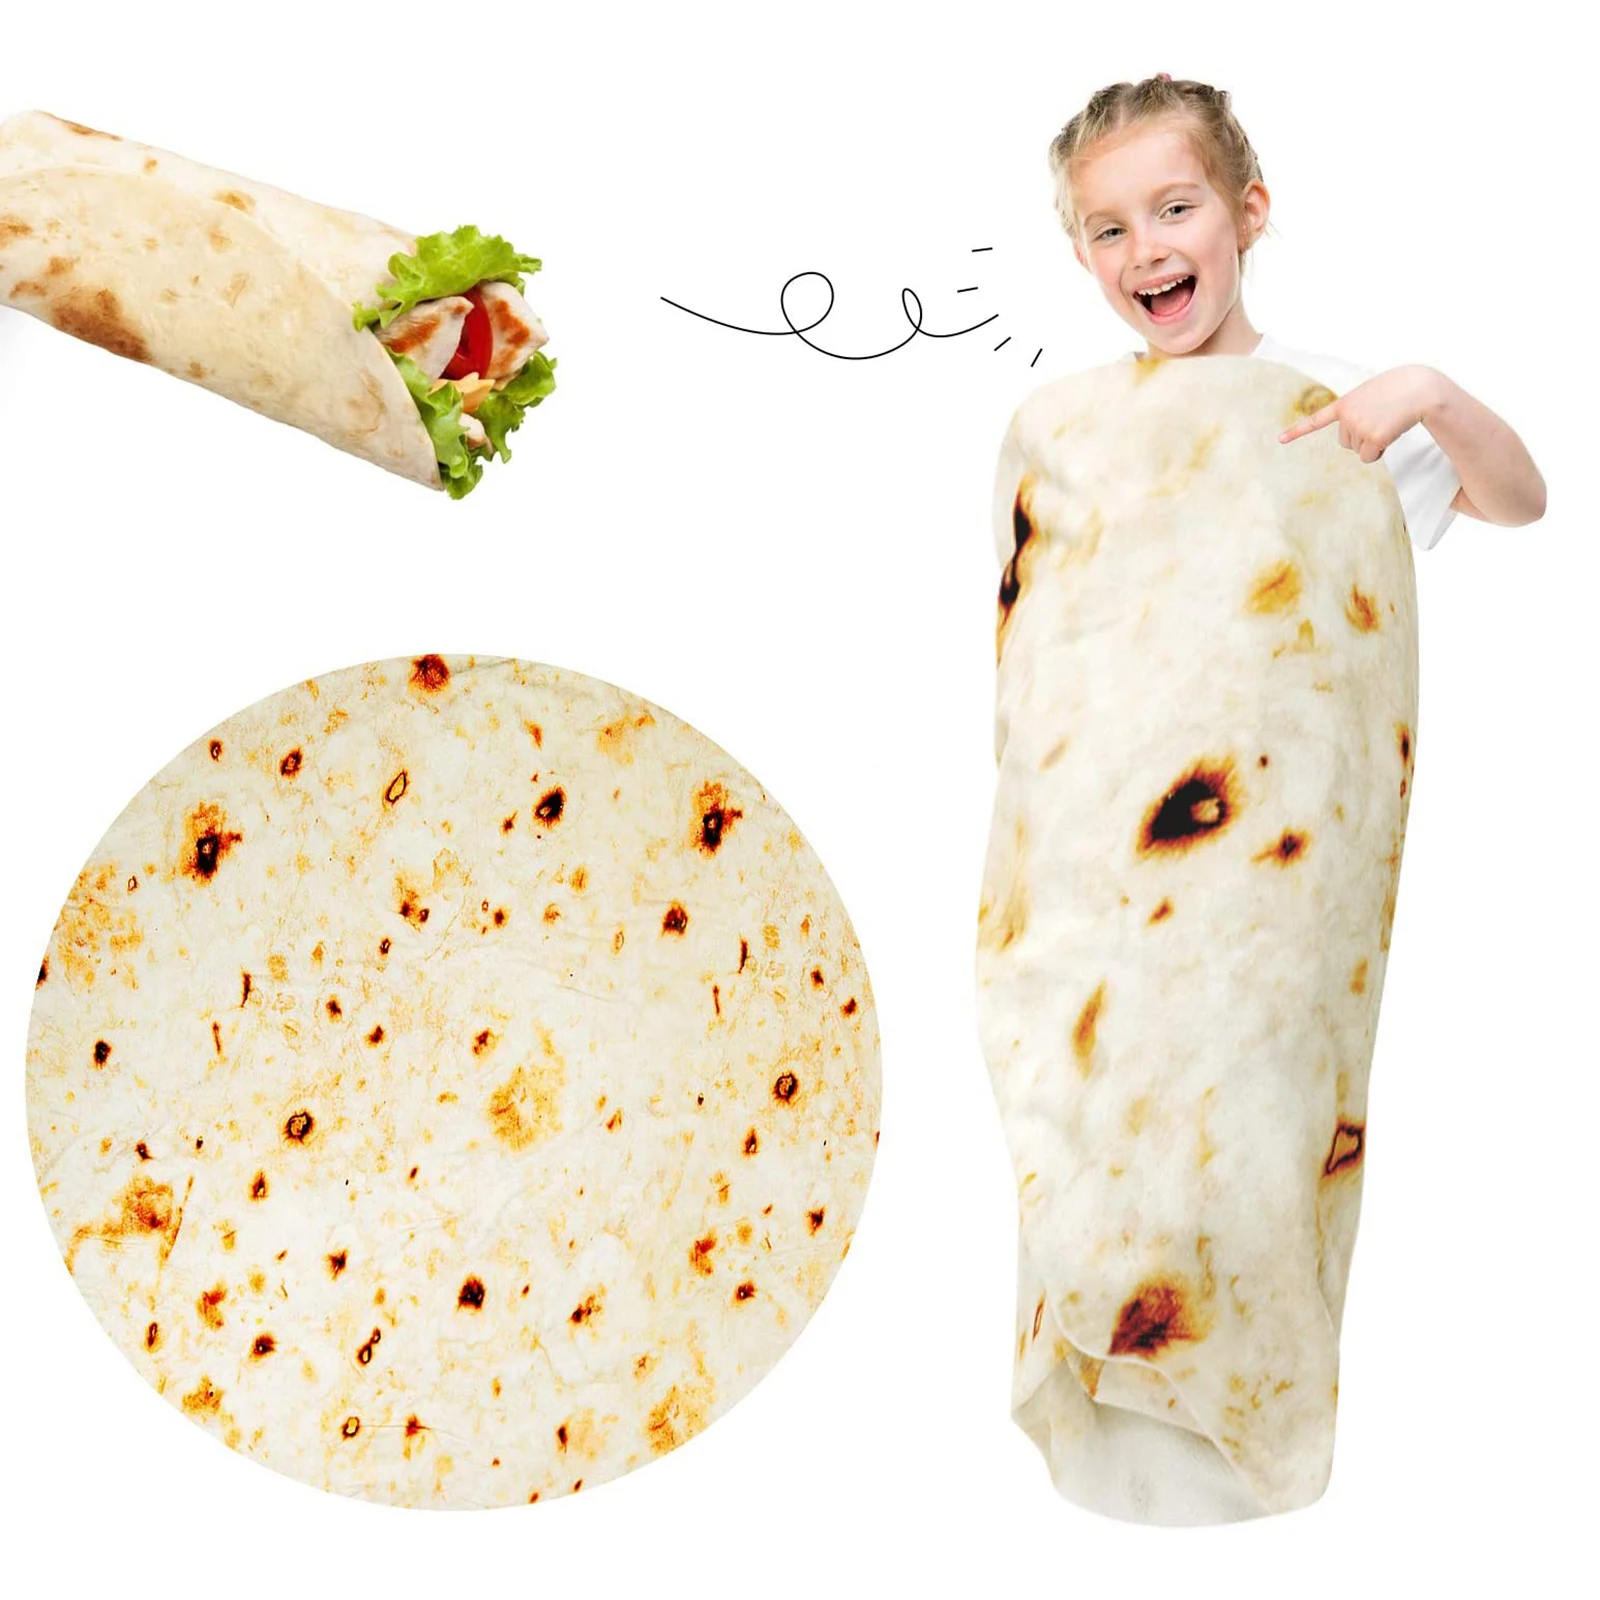 

Одеяло Burrito, забавные подарки для взрослых и детей, мягкое и удобное фланелевое одеяло Taco для кровати, дивана или путешествия